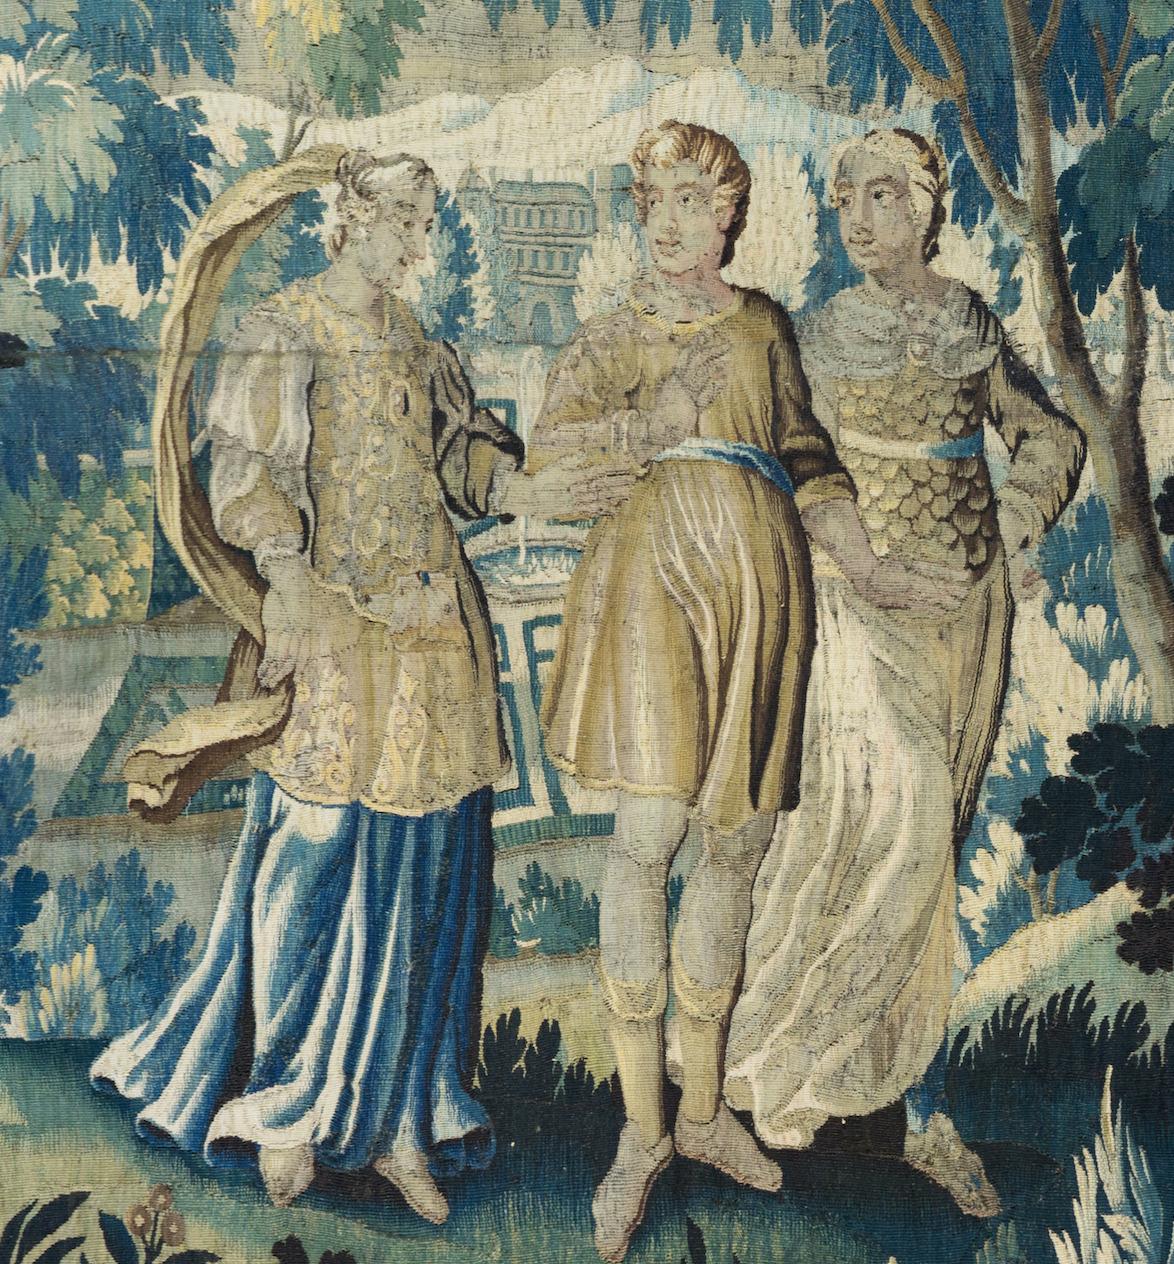 Il s'agit d'une ravissante tapisserie flamande ancienne du XVIIe siècle, de style Verdure, représentant un noble en promenade avec deux femmes de la noblesse par une belle journée d'été dans la campagne avec des arbres et une végétation luxuriante.